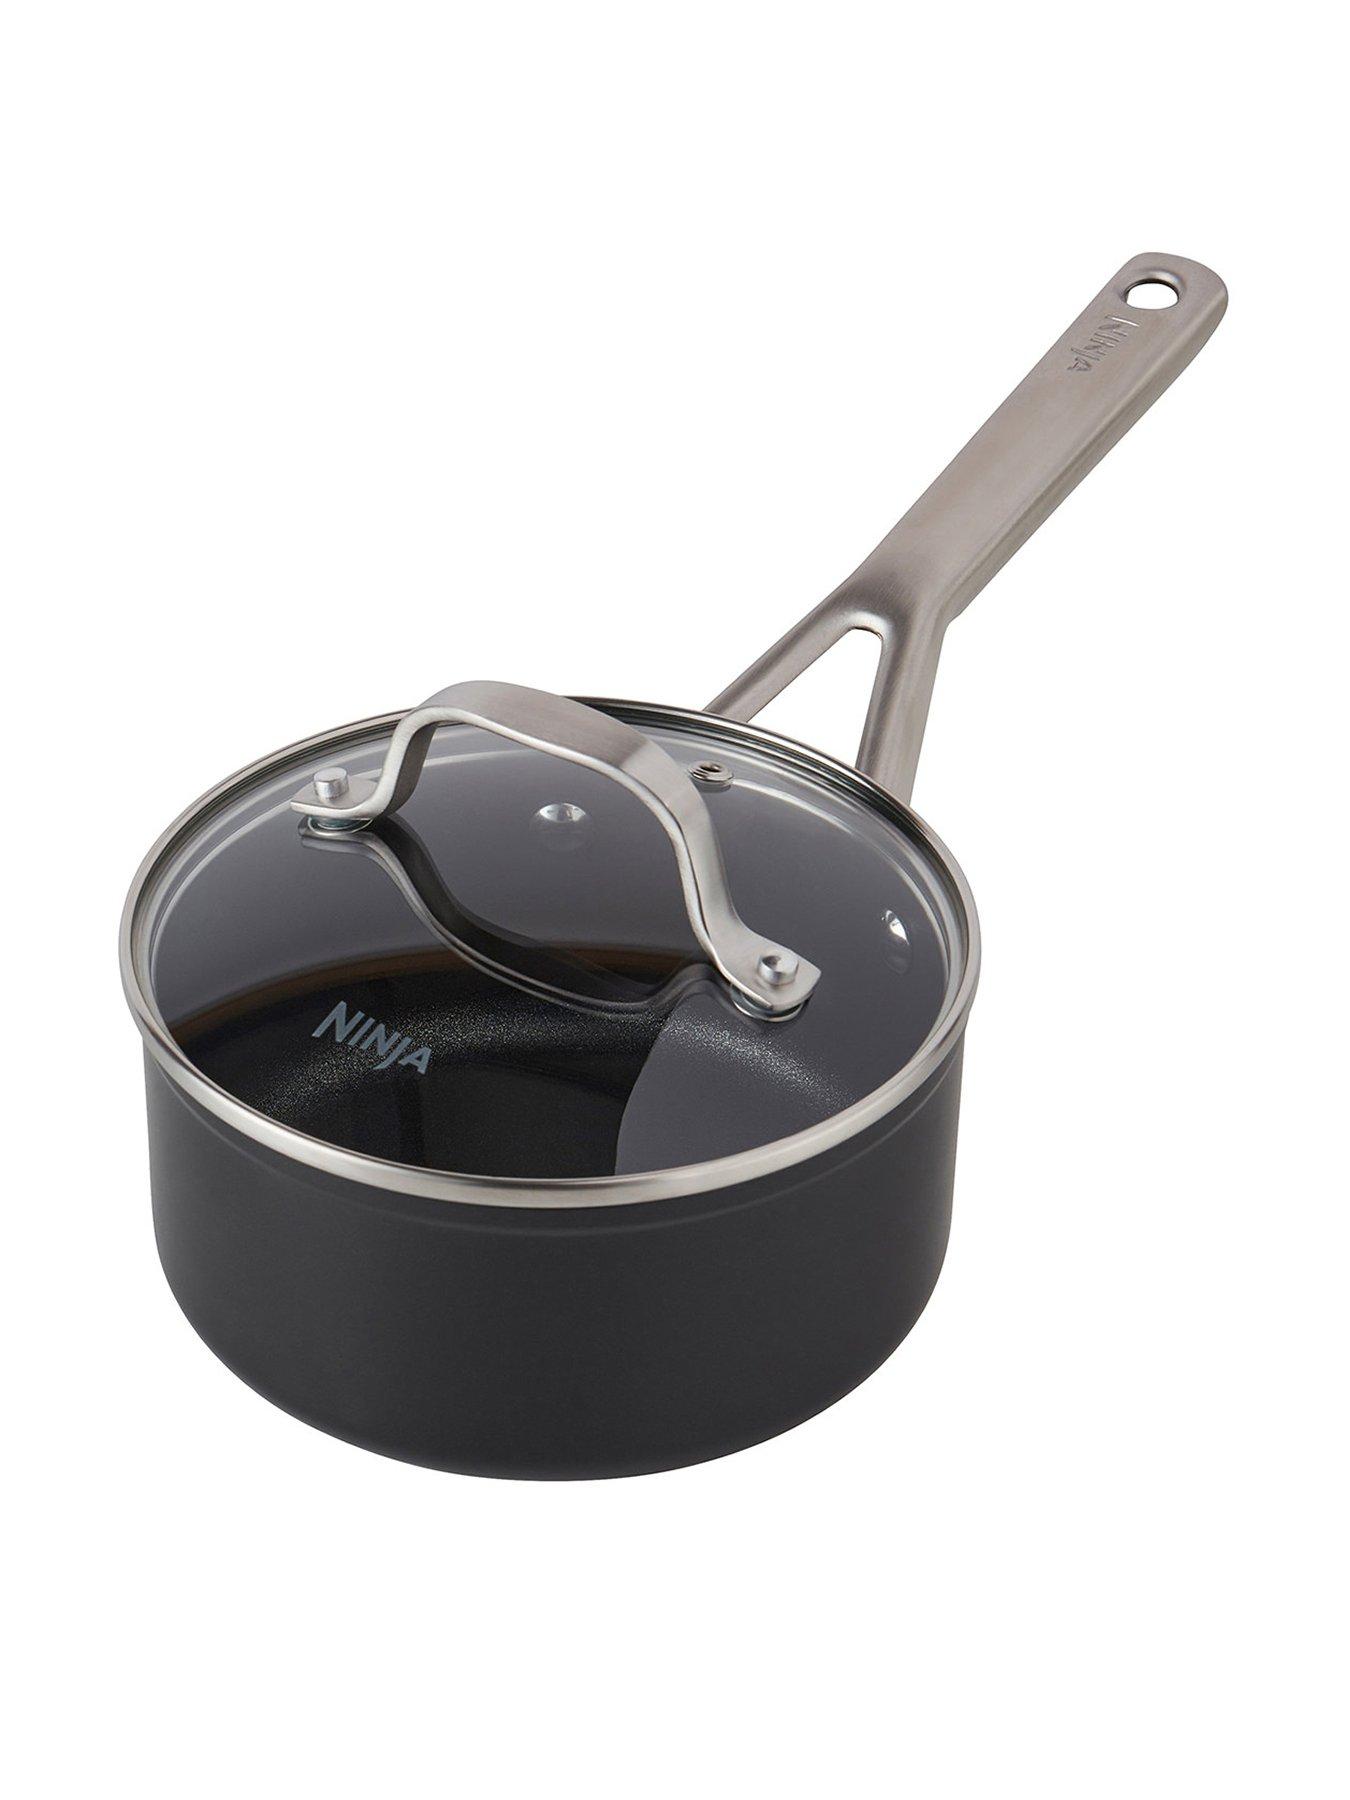  Ninja ZEROSTICK Cookware 20cm Frying Pan, Long Lasting